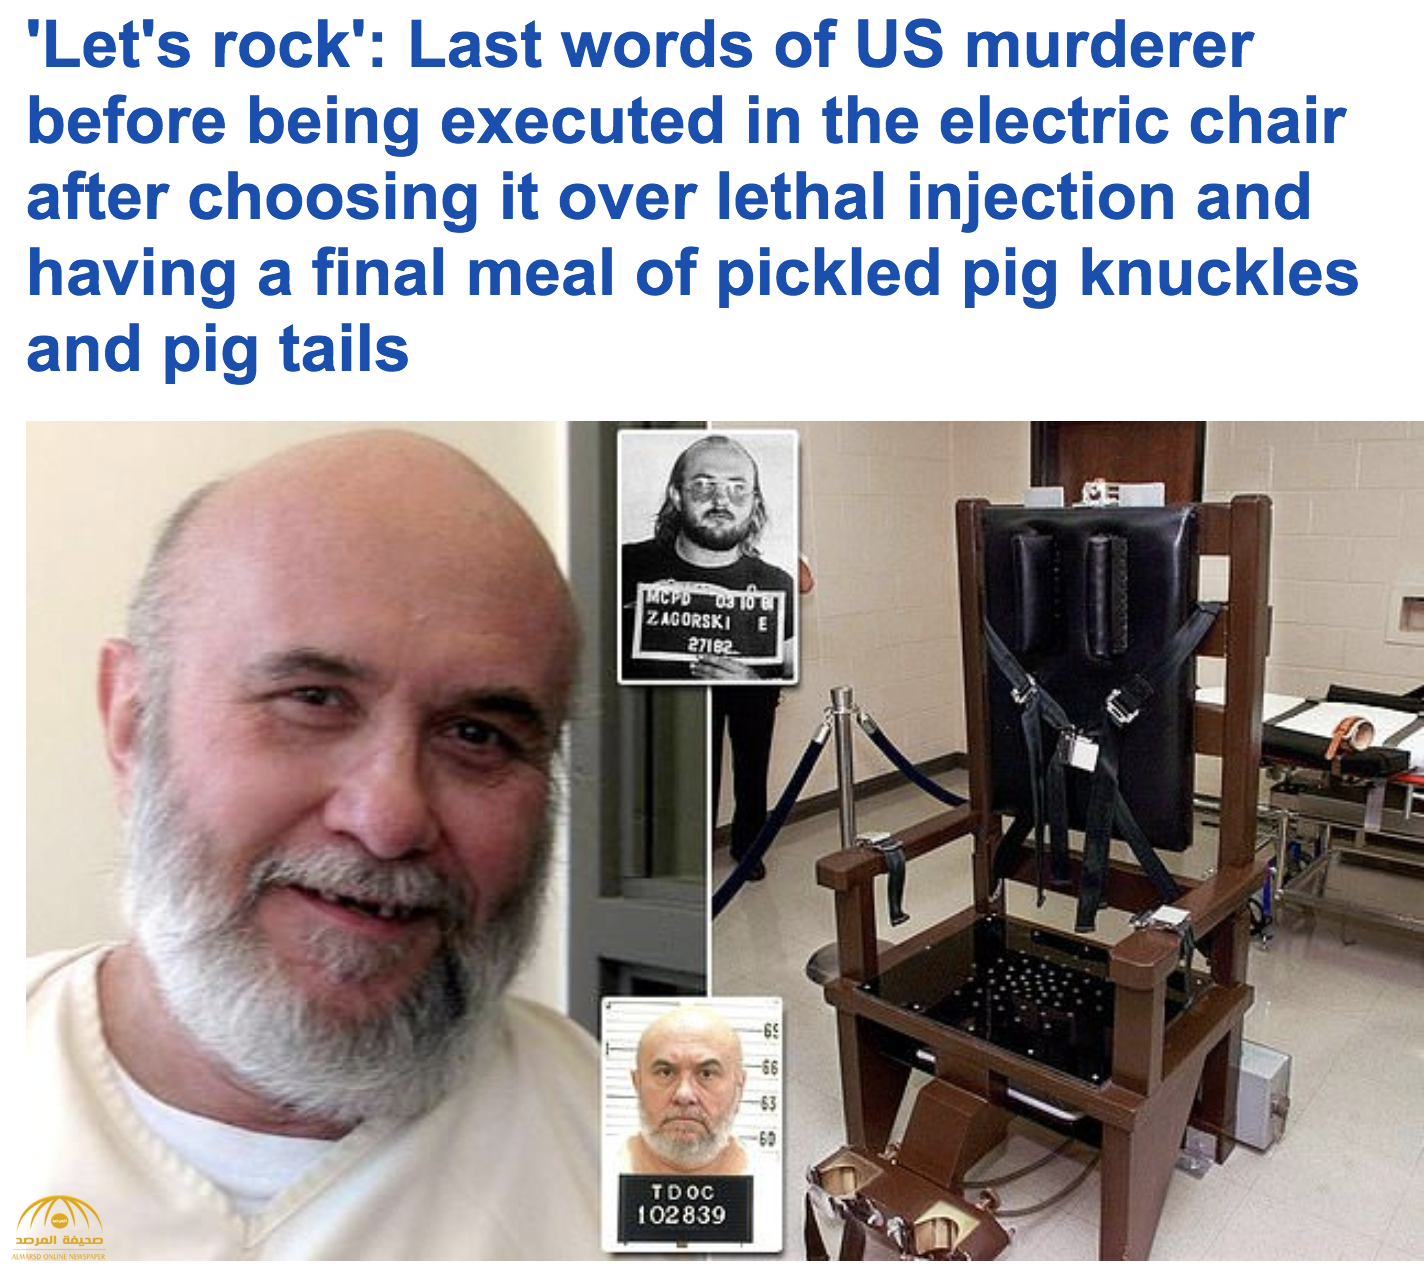 ماذا طلب السجين الأمريكي" "إدموند زاجورسكي"" قبل تنفيذ حكم إعدامه بـ"الكرسي الكهربائي"؟